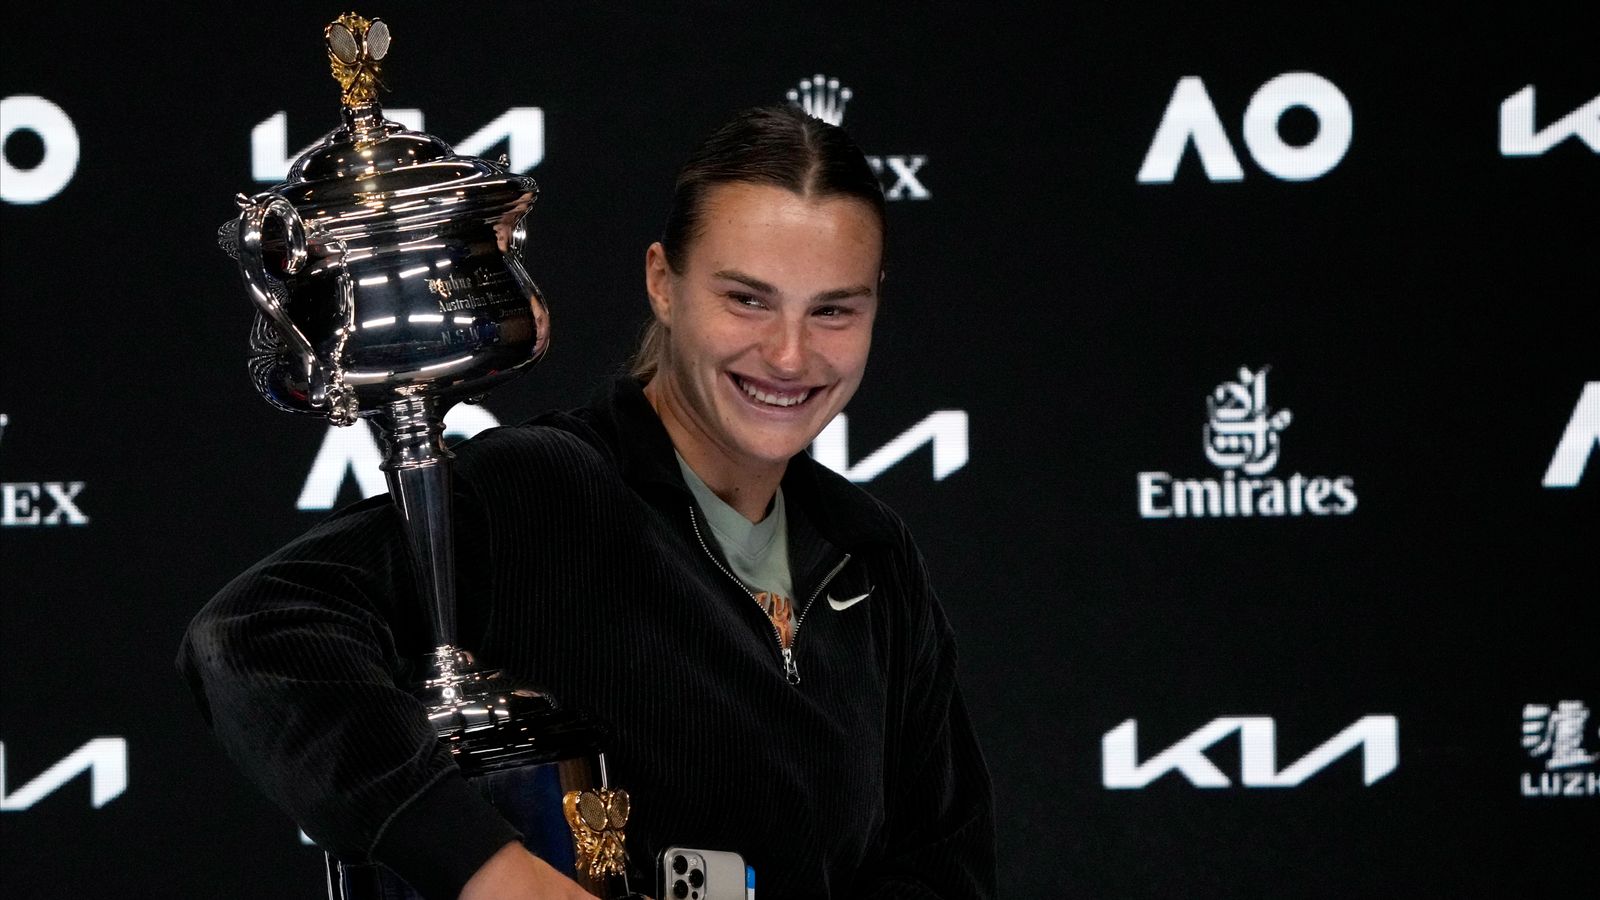 Арина Соболенко говорит, что пропустить Уимблдон было «трудно», но празднует победу на Открытом чемпионате Австралии пиццей и сладостями |  Новости тенниса